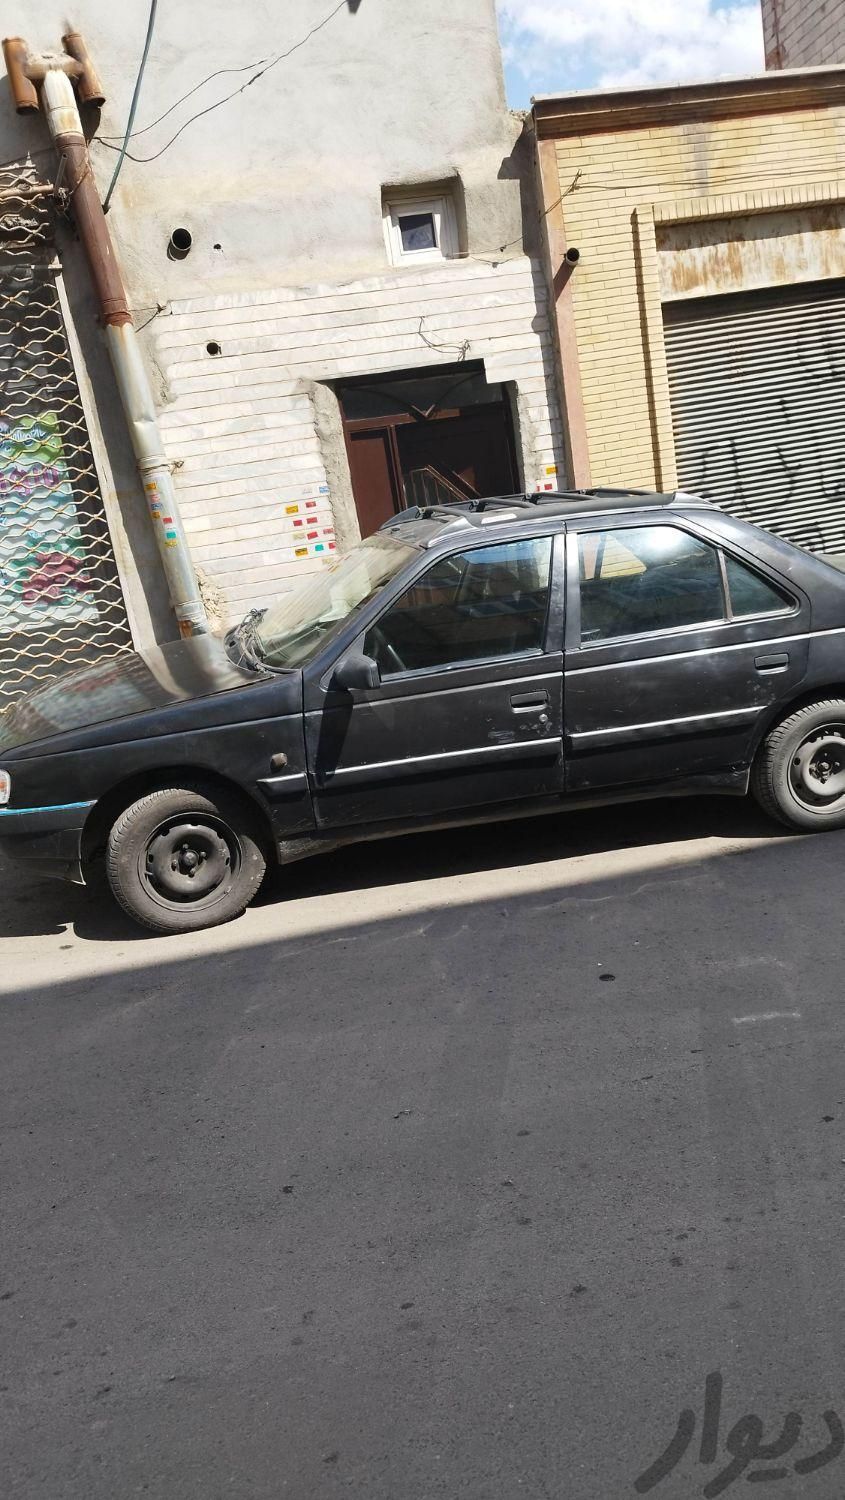 پژو روآ سال دوگانه سوز، مدل ۱۳۸۹|سواری و وانت|تبریز, |دیوار